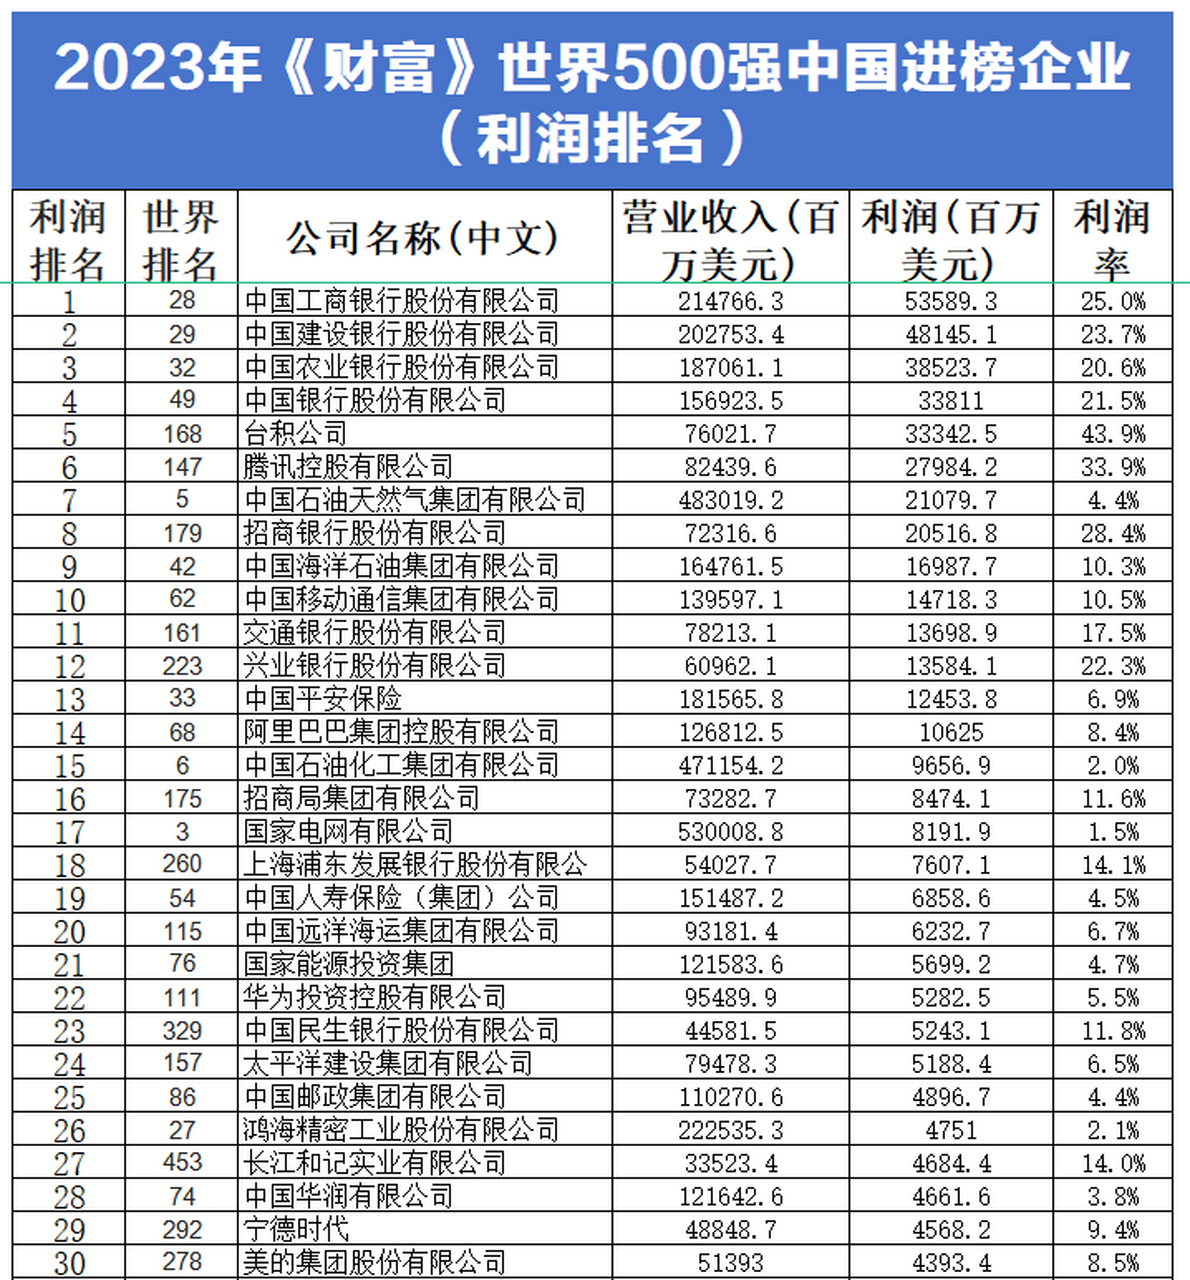 2023年《财富》世界500强企业排行榜中国一共进榜142家,排世界第换